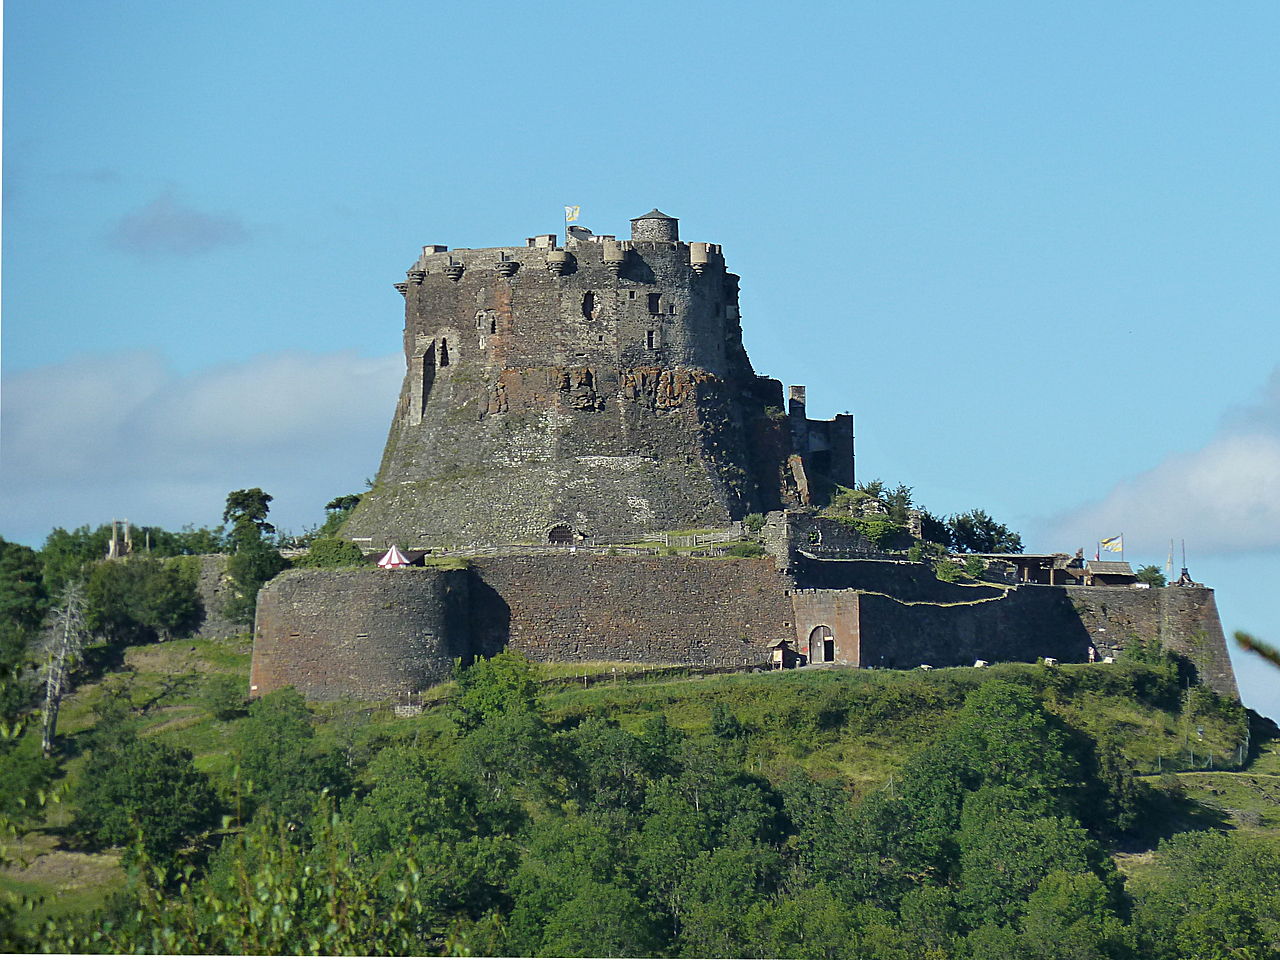 Lire la suite à propos de l’article Le château de Murol, visite dans le Puy-de-Dôme